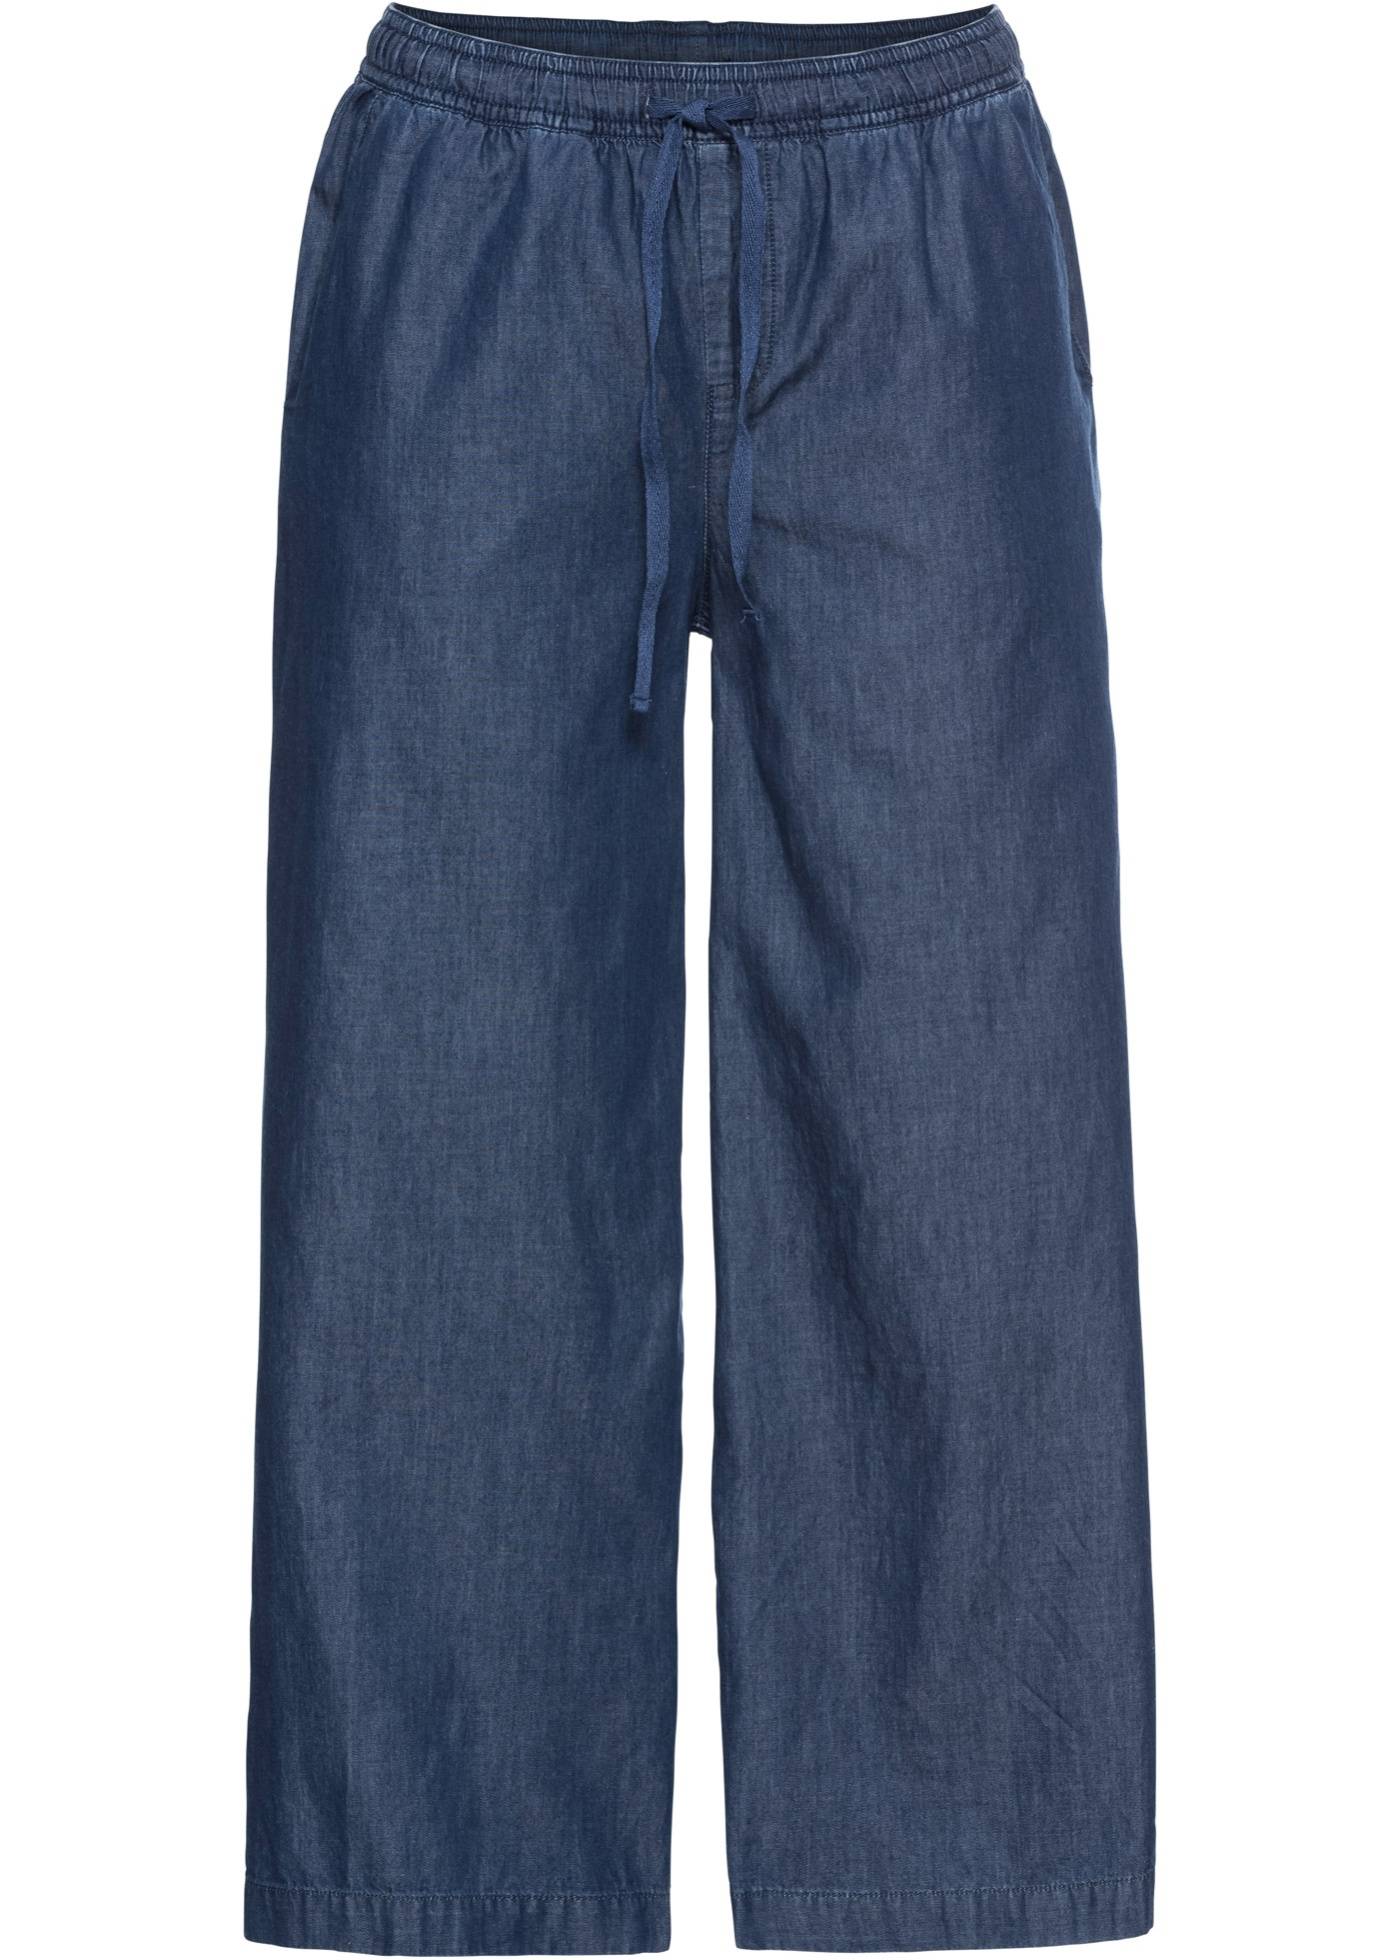 Широкие джинсы на резинке женские. Широкие джинсы на резинке. Джинсовые брюки женские широкие. Брюки из джинсовой ткани женские.